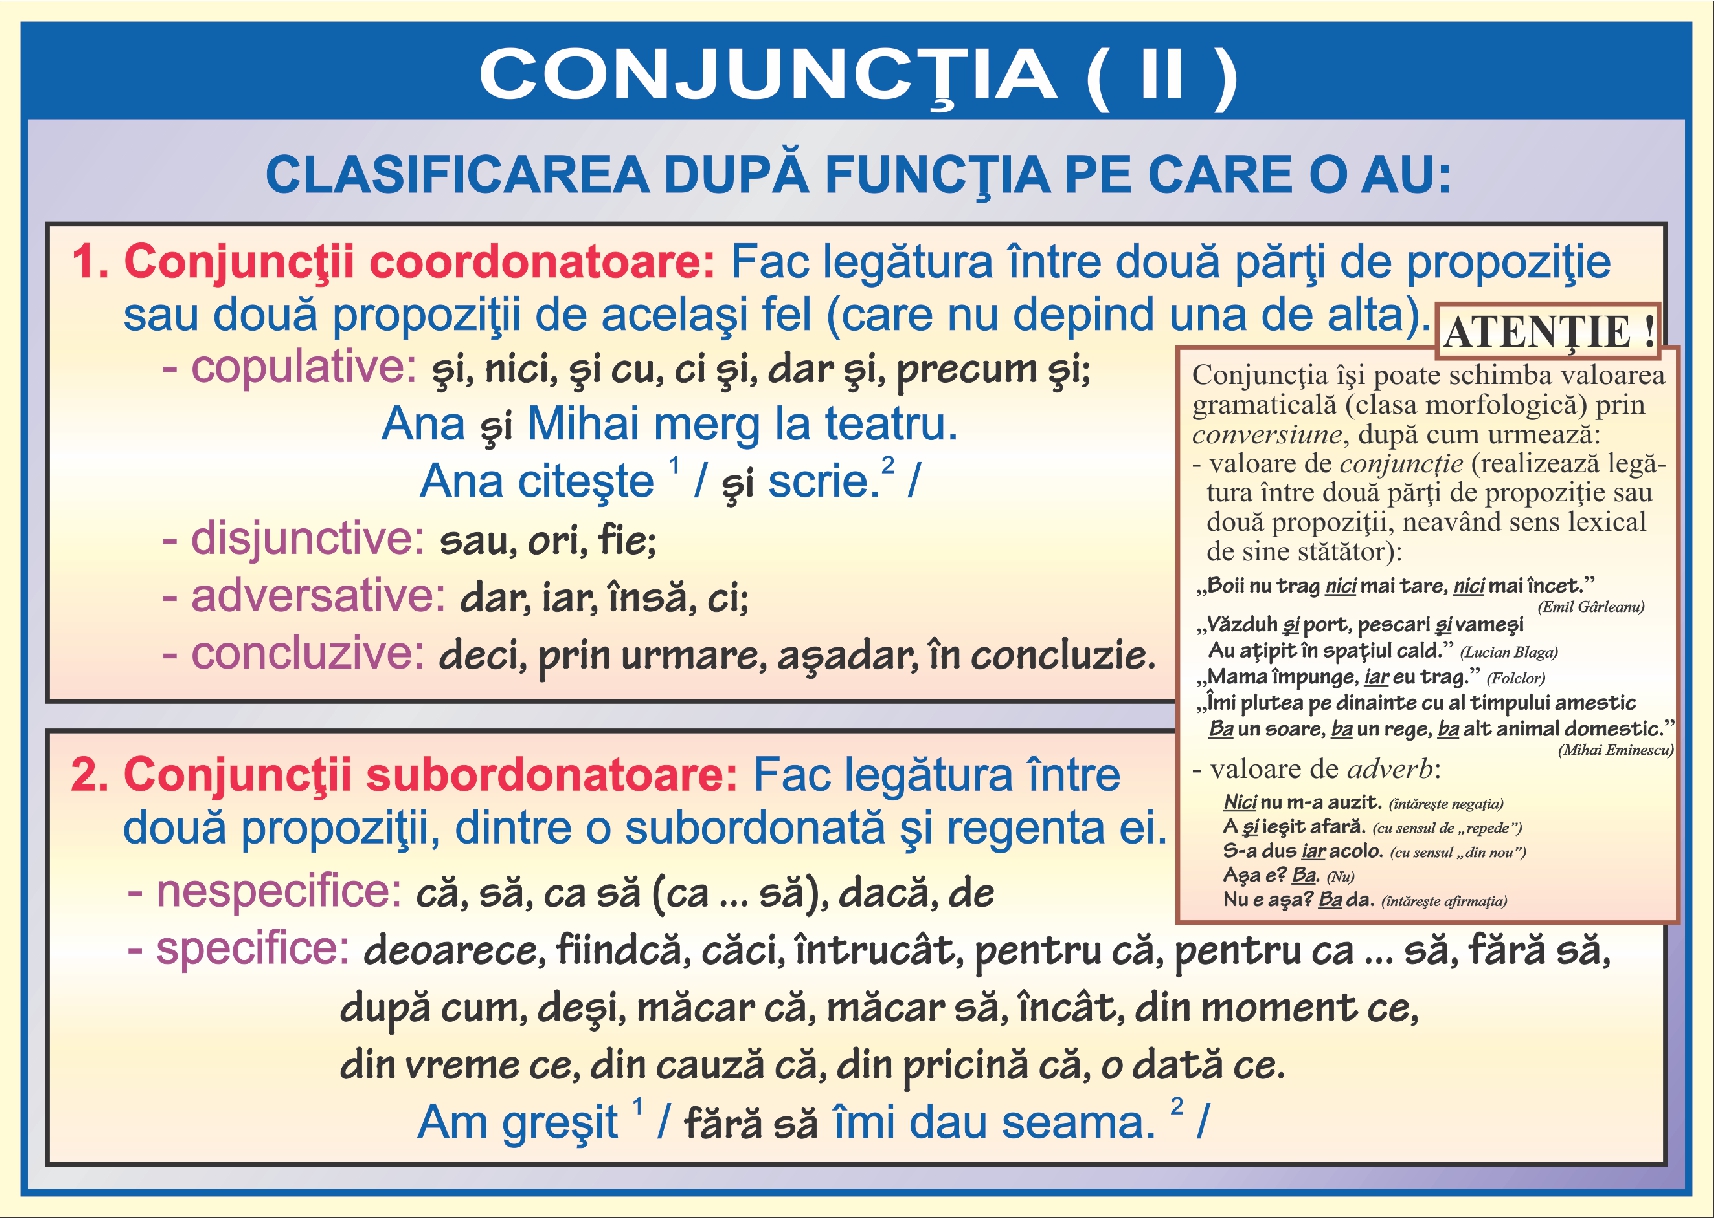 Conjunctia - II